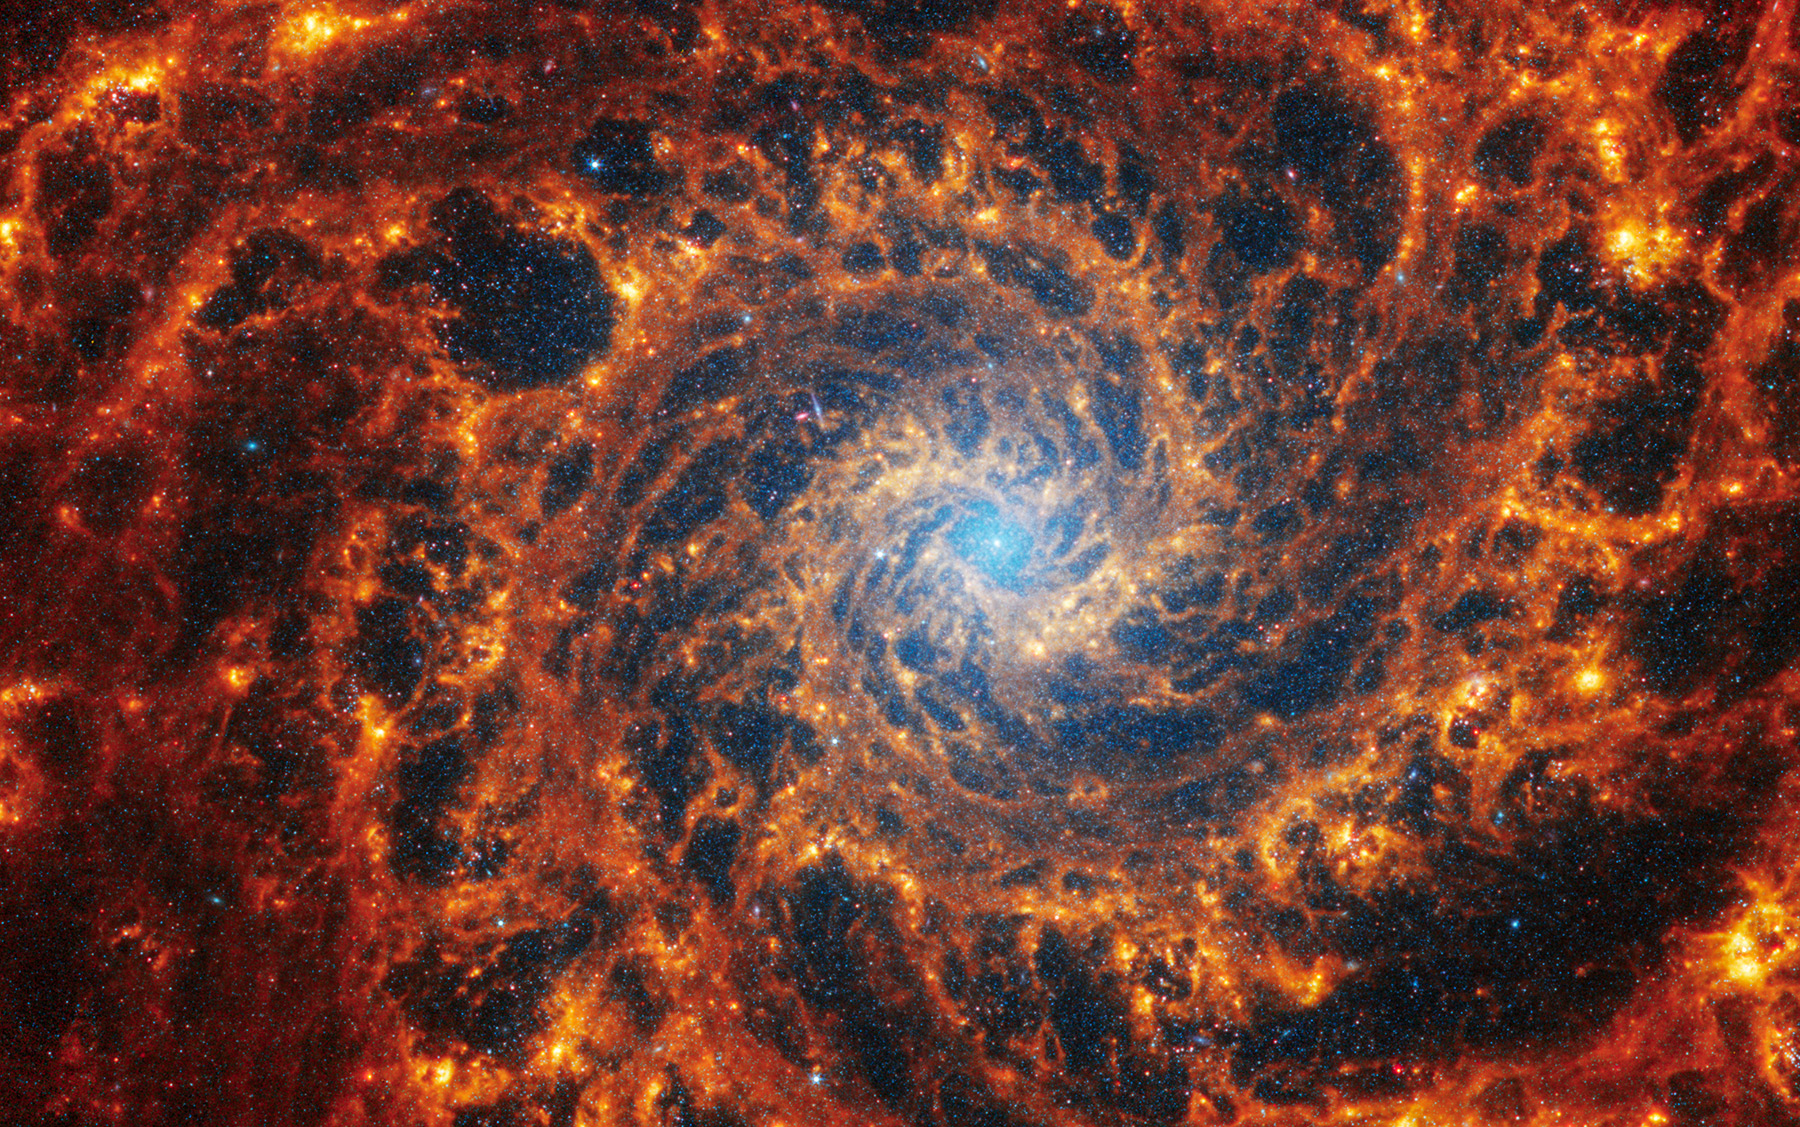 Спиральная галактика NGC 628 в созвездии Рыбы. В галактике, которую также иногда называют M-74,&nbsp;находится приблизительно 100 млрд звезд различной величины. Множество точек синего цвета в центре галактики&nbsp;&mdash; это скопление старых звезд. Галактика расположена на расстоянии 32 млн световых лет от Солнца. Световой год&nbsp;&mdash; это расстояние, которое проходит луч света за один земной год, что составляет примерно 9,7 трлн км